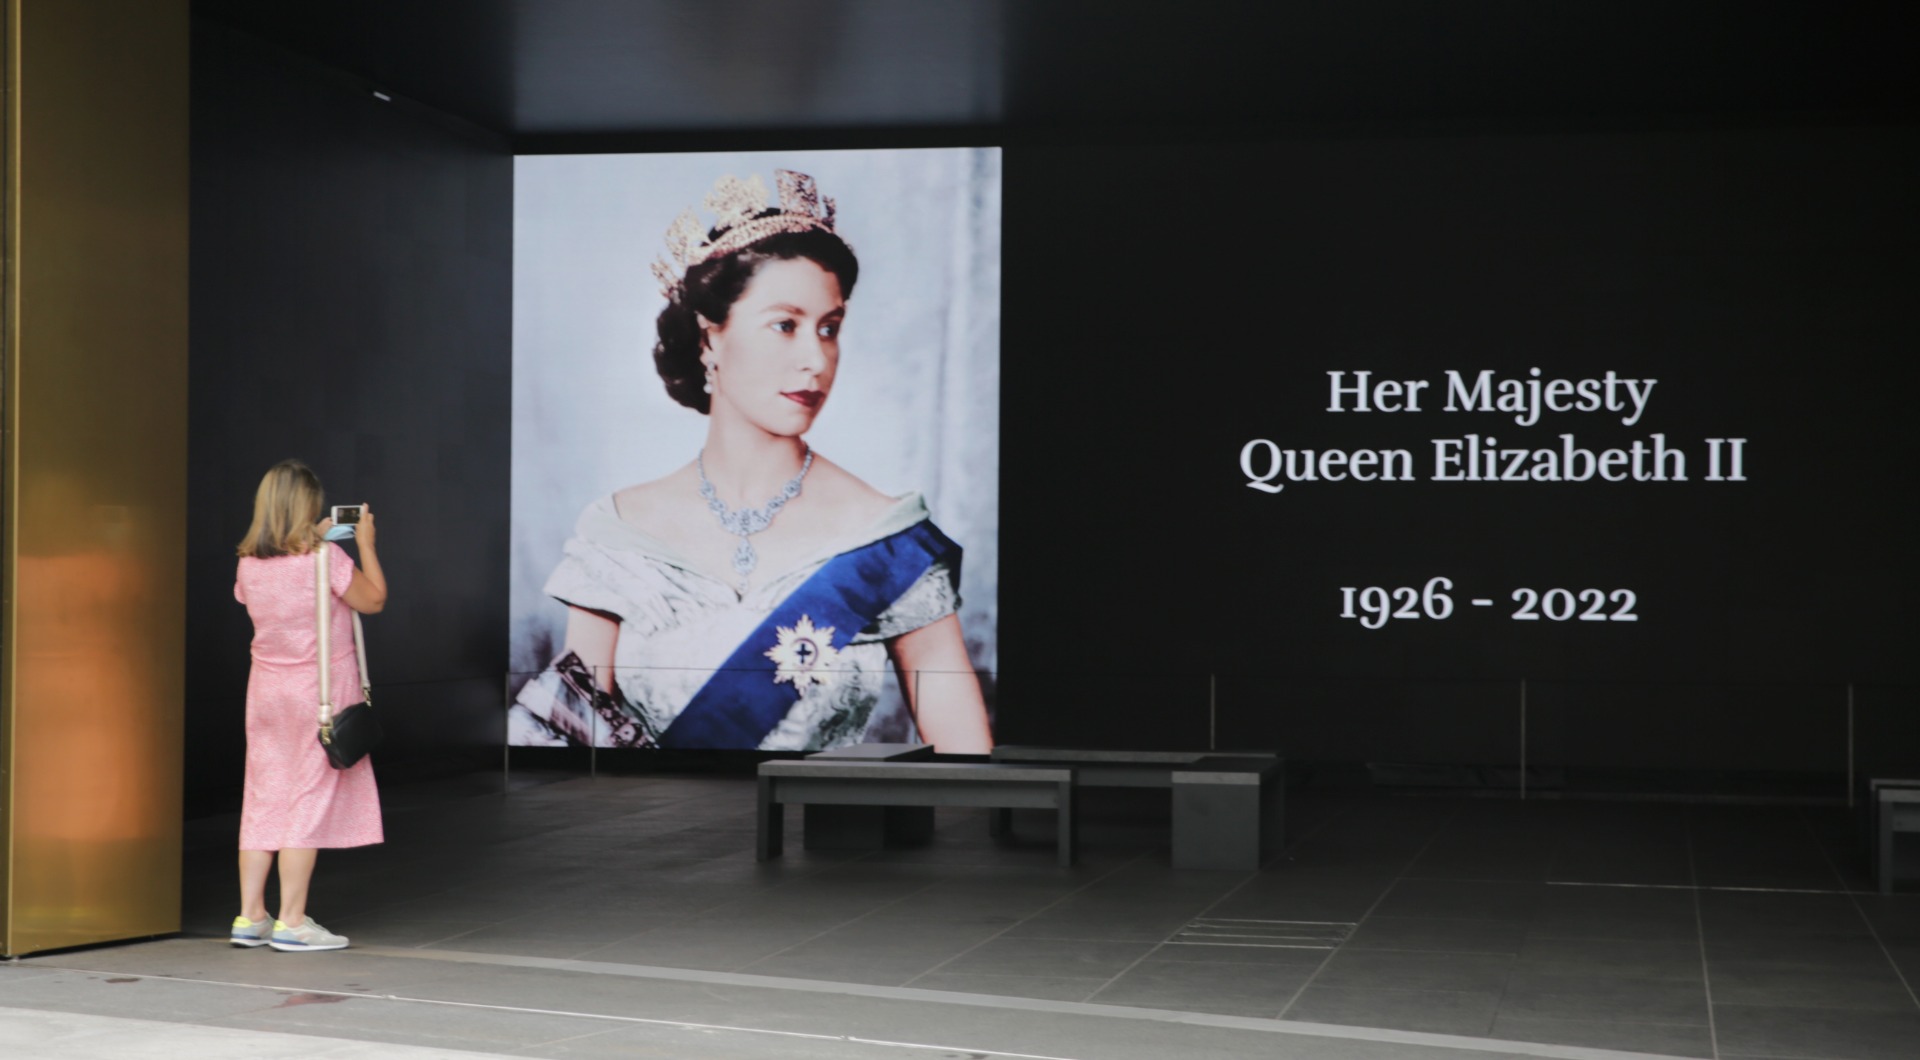 Kraliçe'nin ölümünün ardından İngiltere'nin sömürgeci geçmişi tartışılıyor